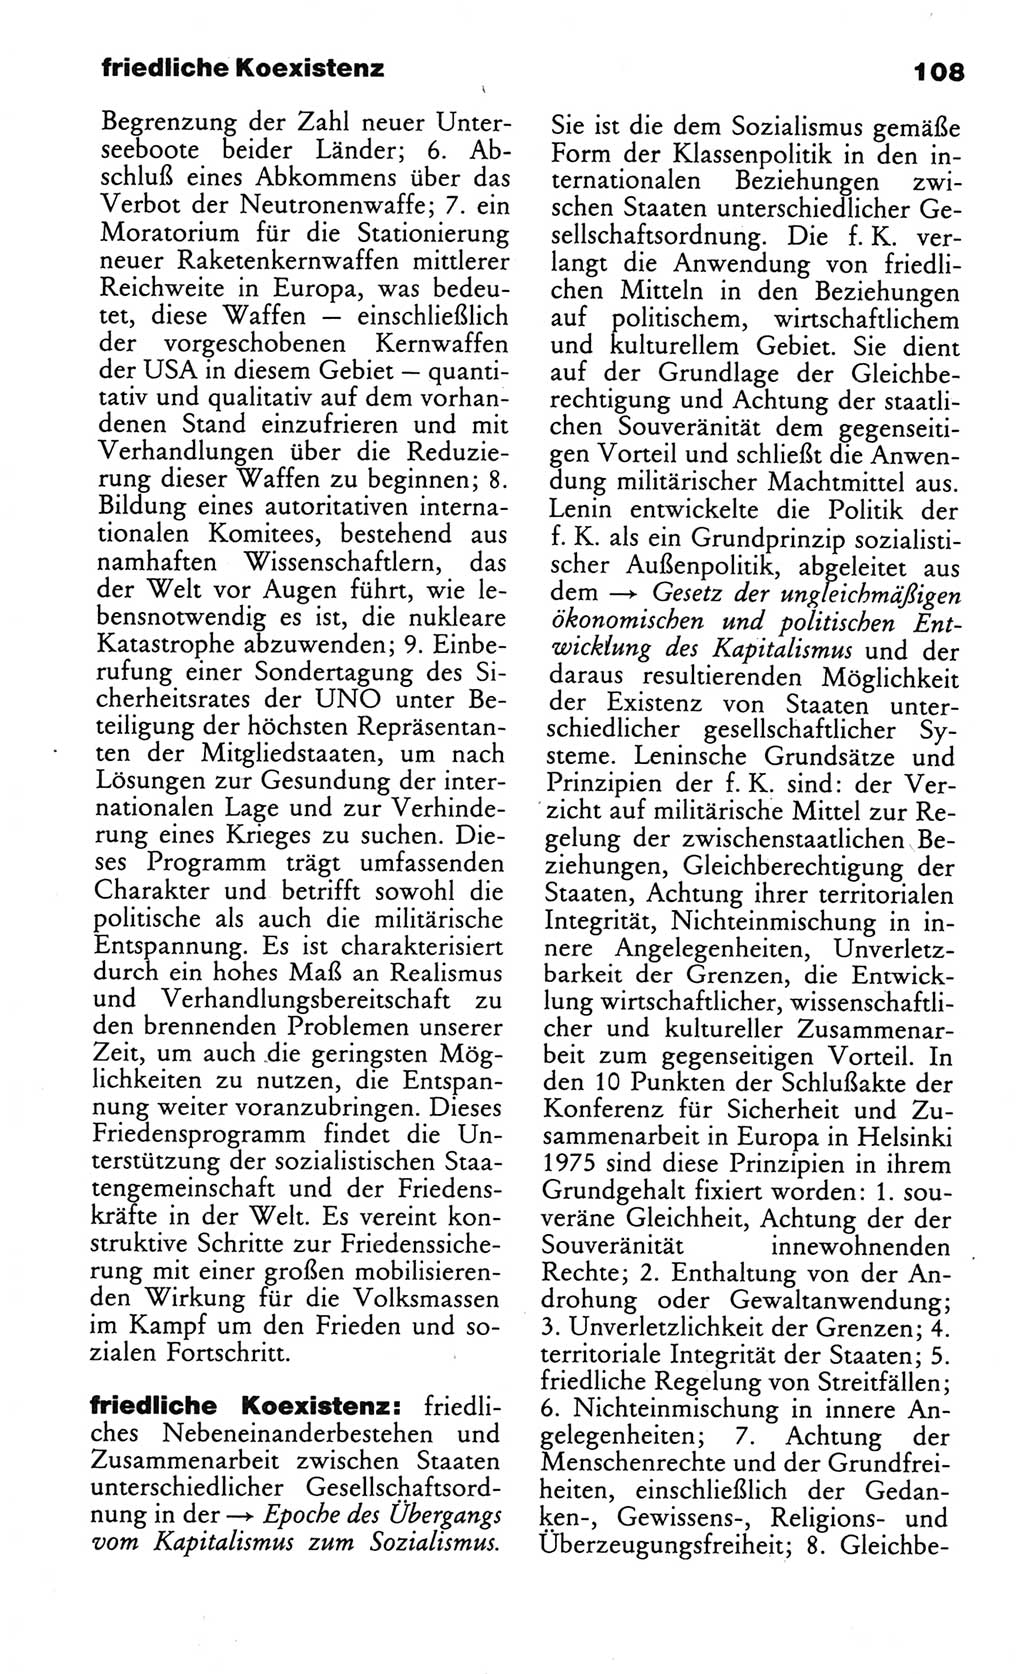 Wörterbuch des wissenschaftlichen Kommunismus [Deutsche Demokratische Republik (DDR)] 1984, Seite 108 (Wb. wiss. Komm. DDR 1984, S. 108)